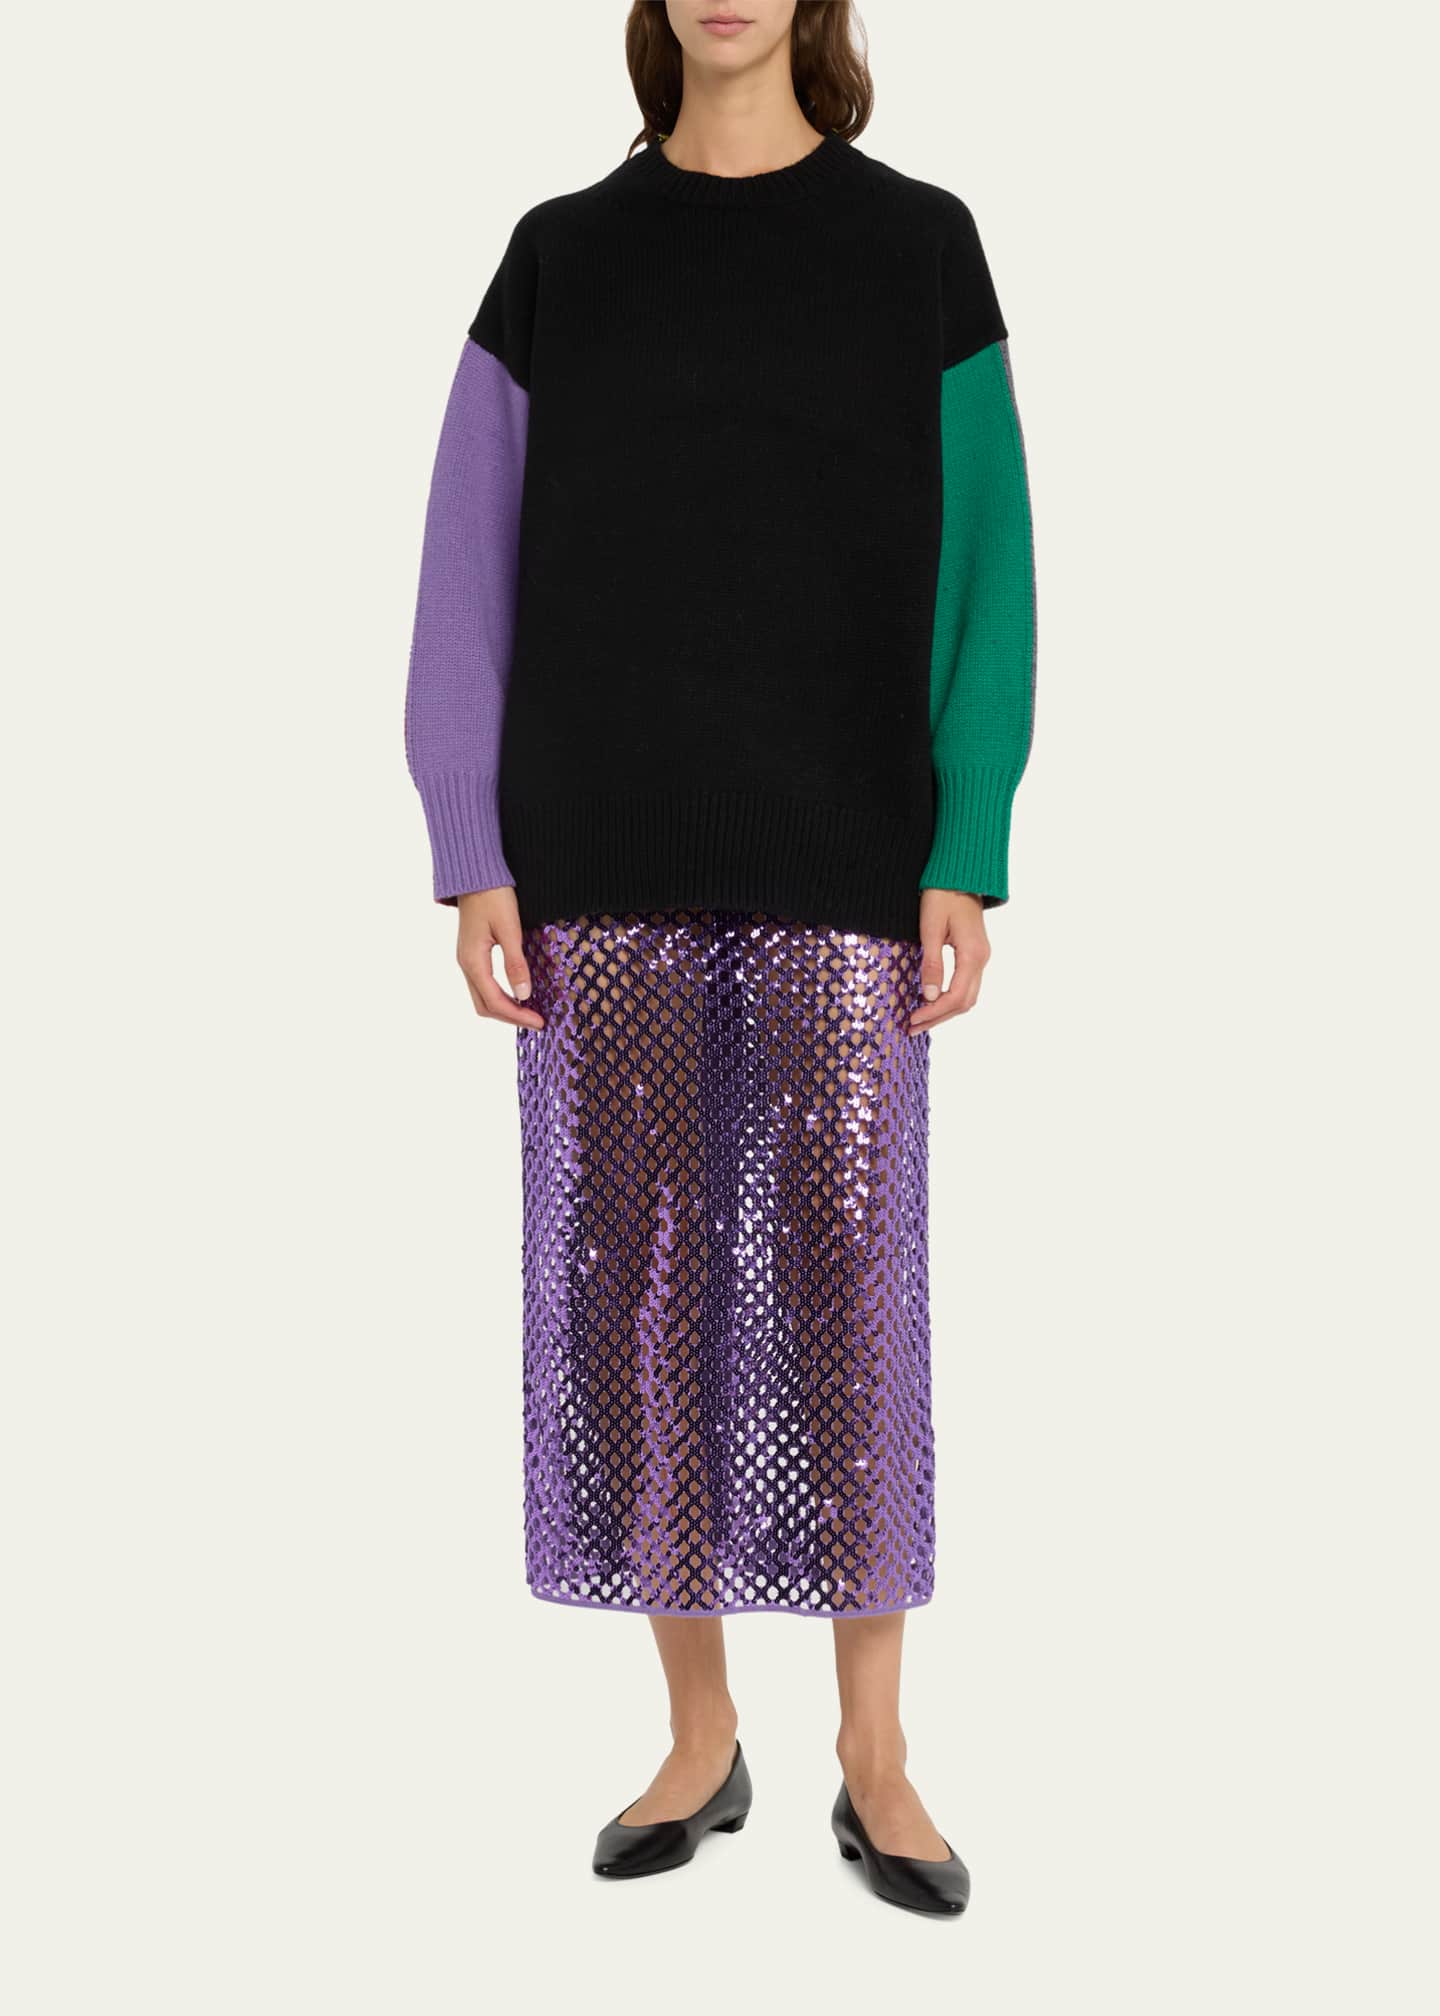 ZANKOV Ryo Colorblock Wool Sweater - Bergdorf Goodman